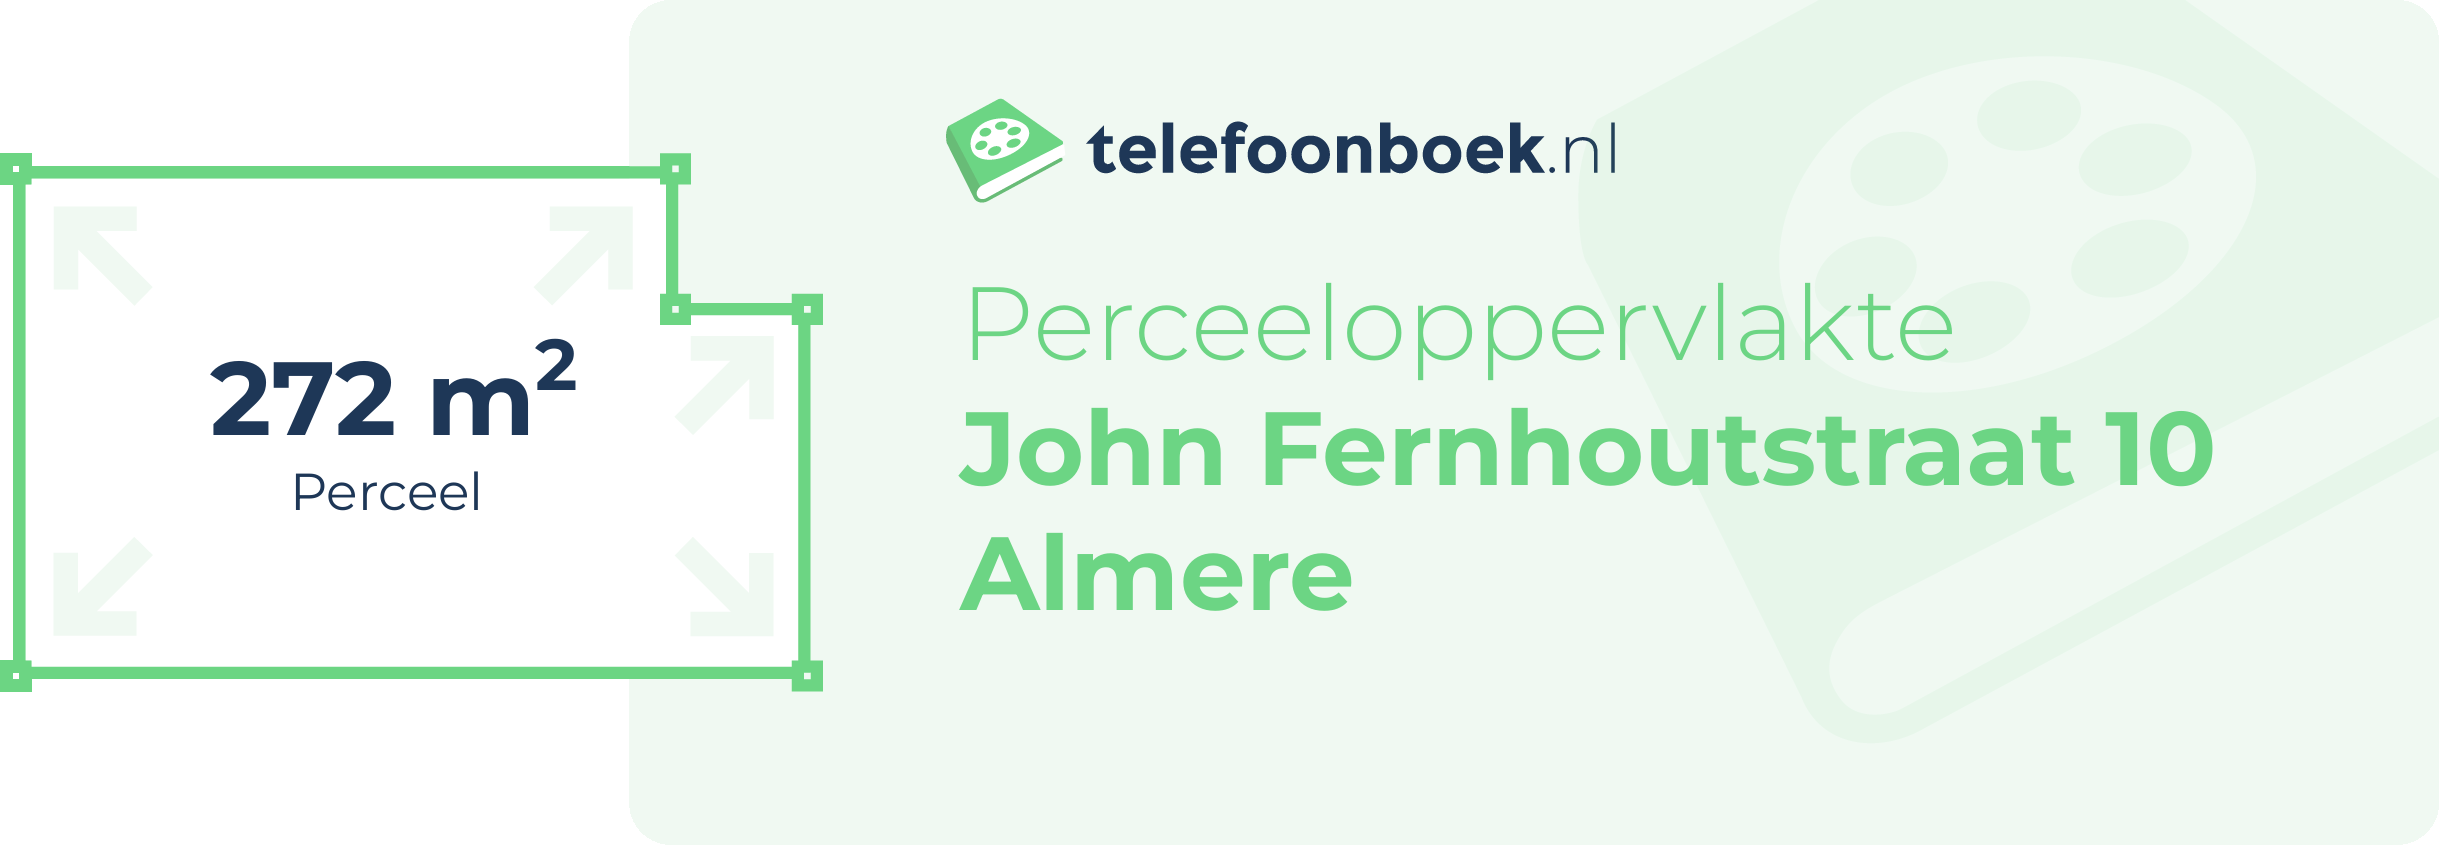 Perceeloppervlakte John Fernhoutstraat 10 Almere